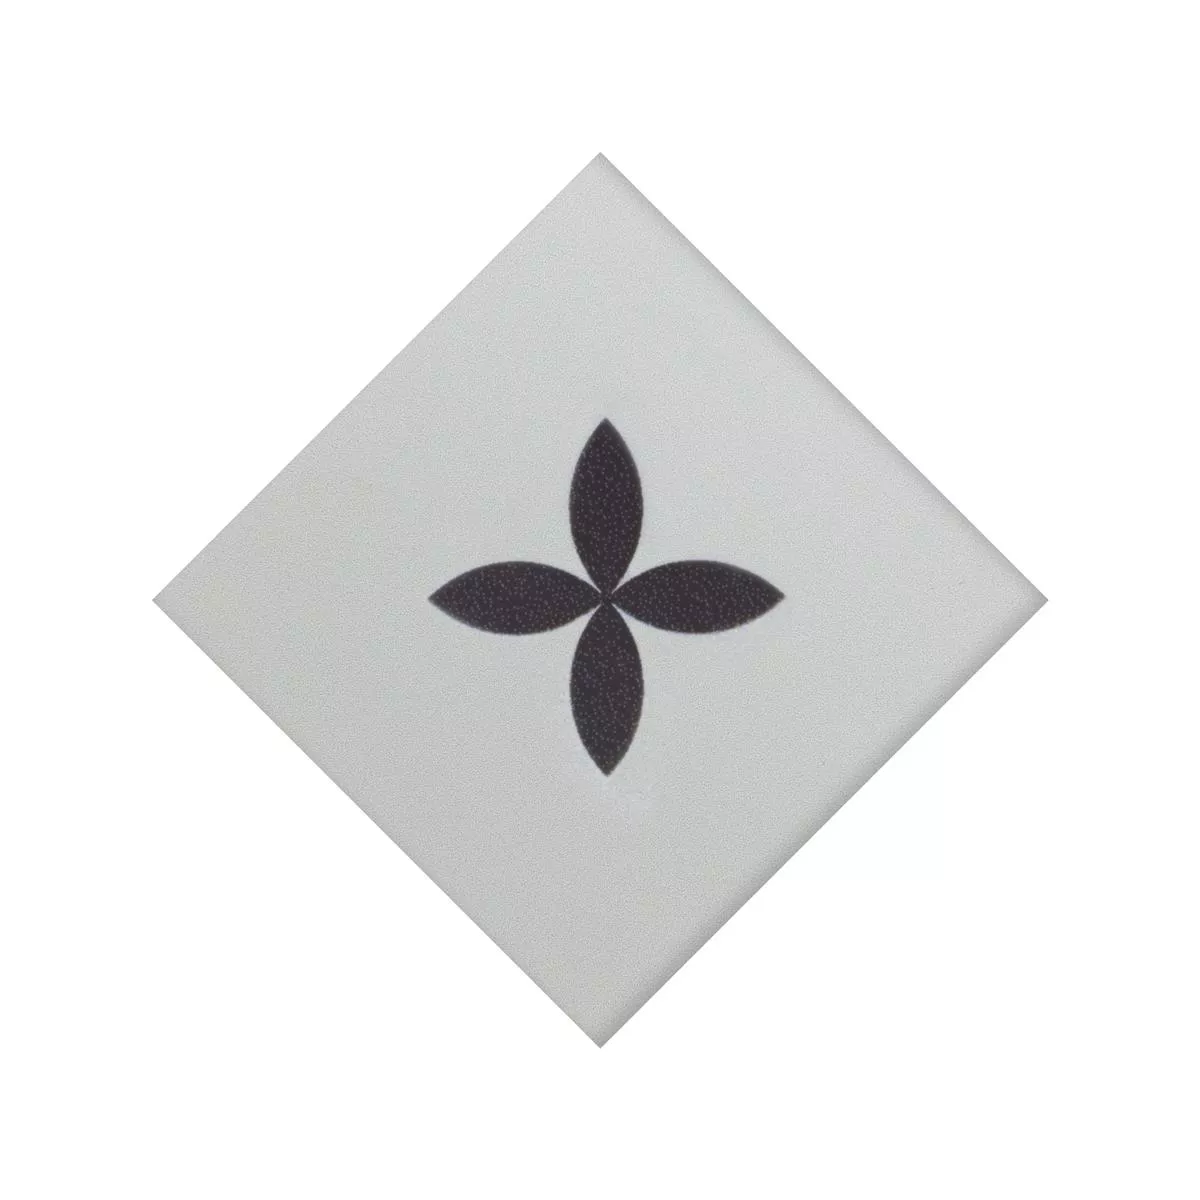 Porcellanato Fliser Genexia Sort Hvid Decor 4 Rosone  4,6x4,6cm